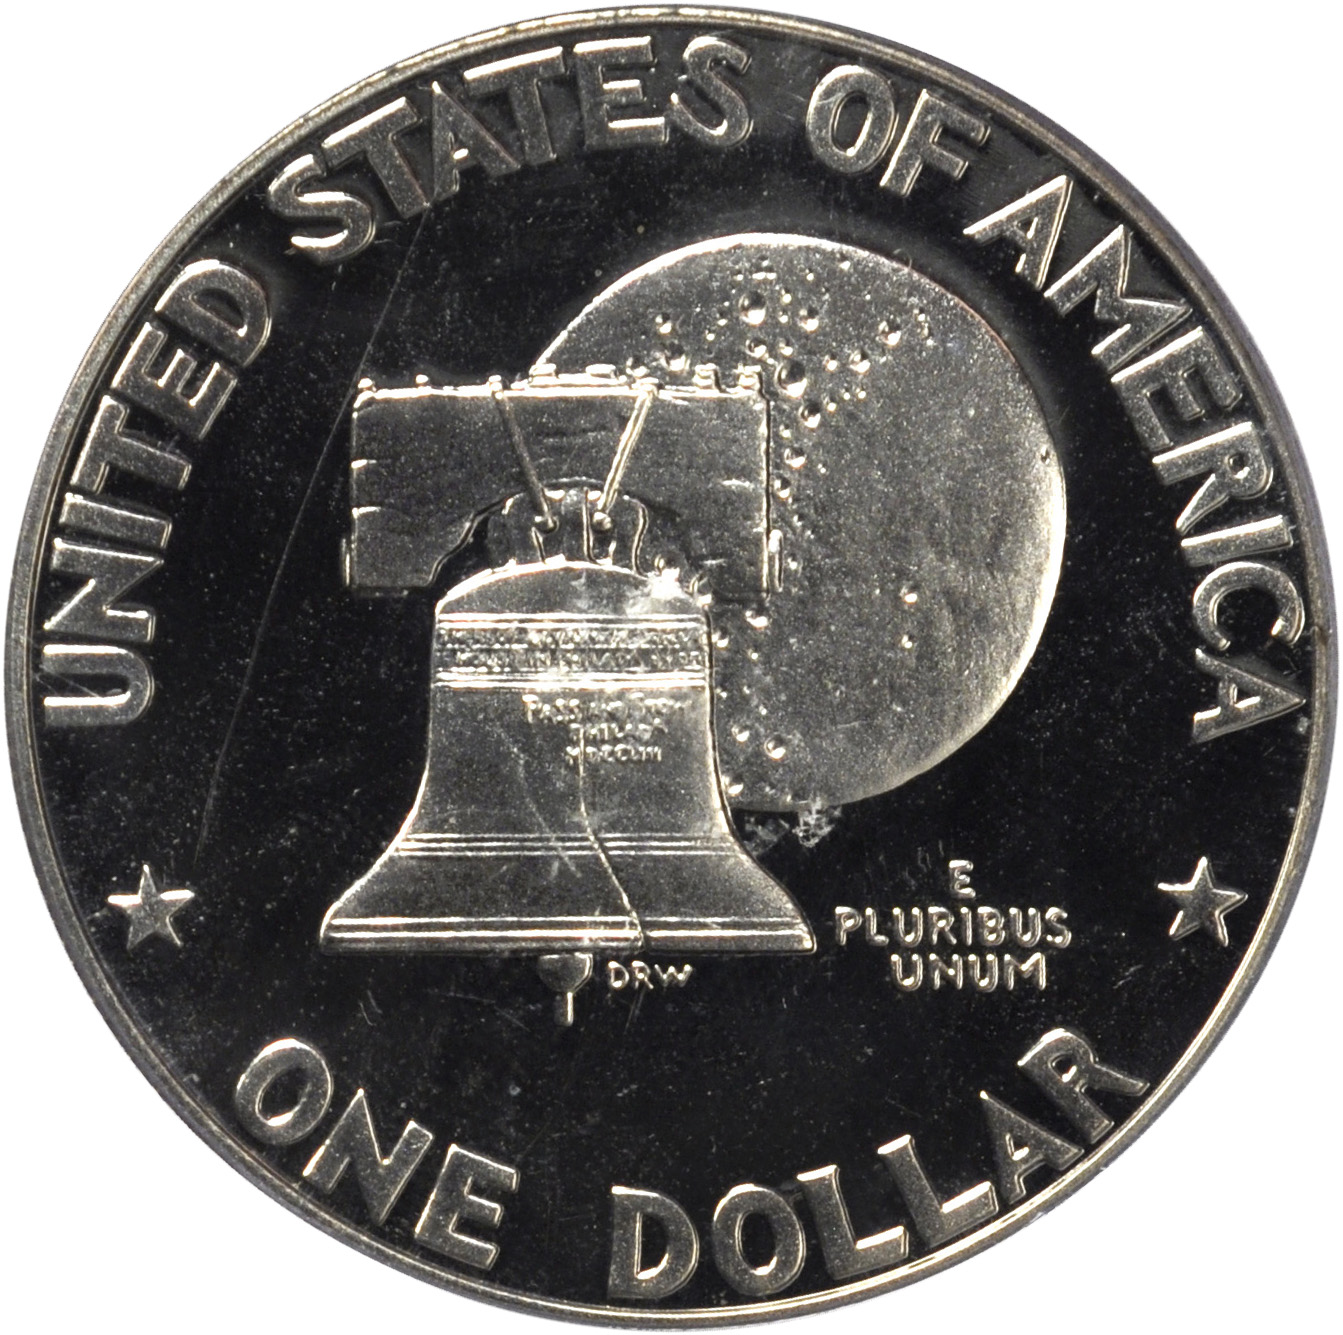 Value of 1976-S Type 2 Eisenhower Dollar | Sell Modern Coins